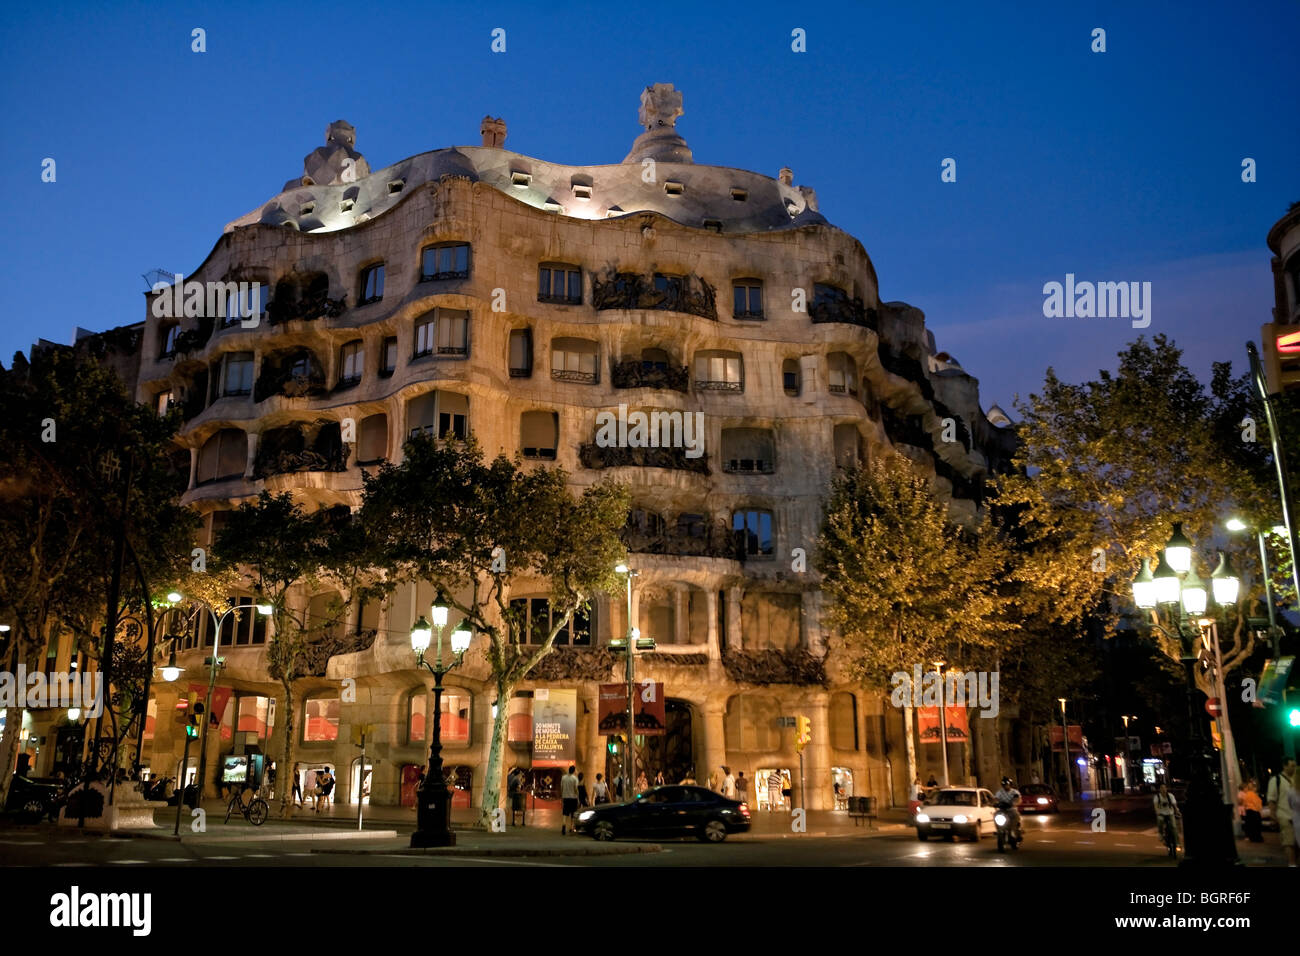 Barcelona - Spanisch-Art-Nouveau-Bewegung - Modernisme - Gaudi - Stadtteil Eixample - Casa Mila oder "La Pedrera" Stockfoto